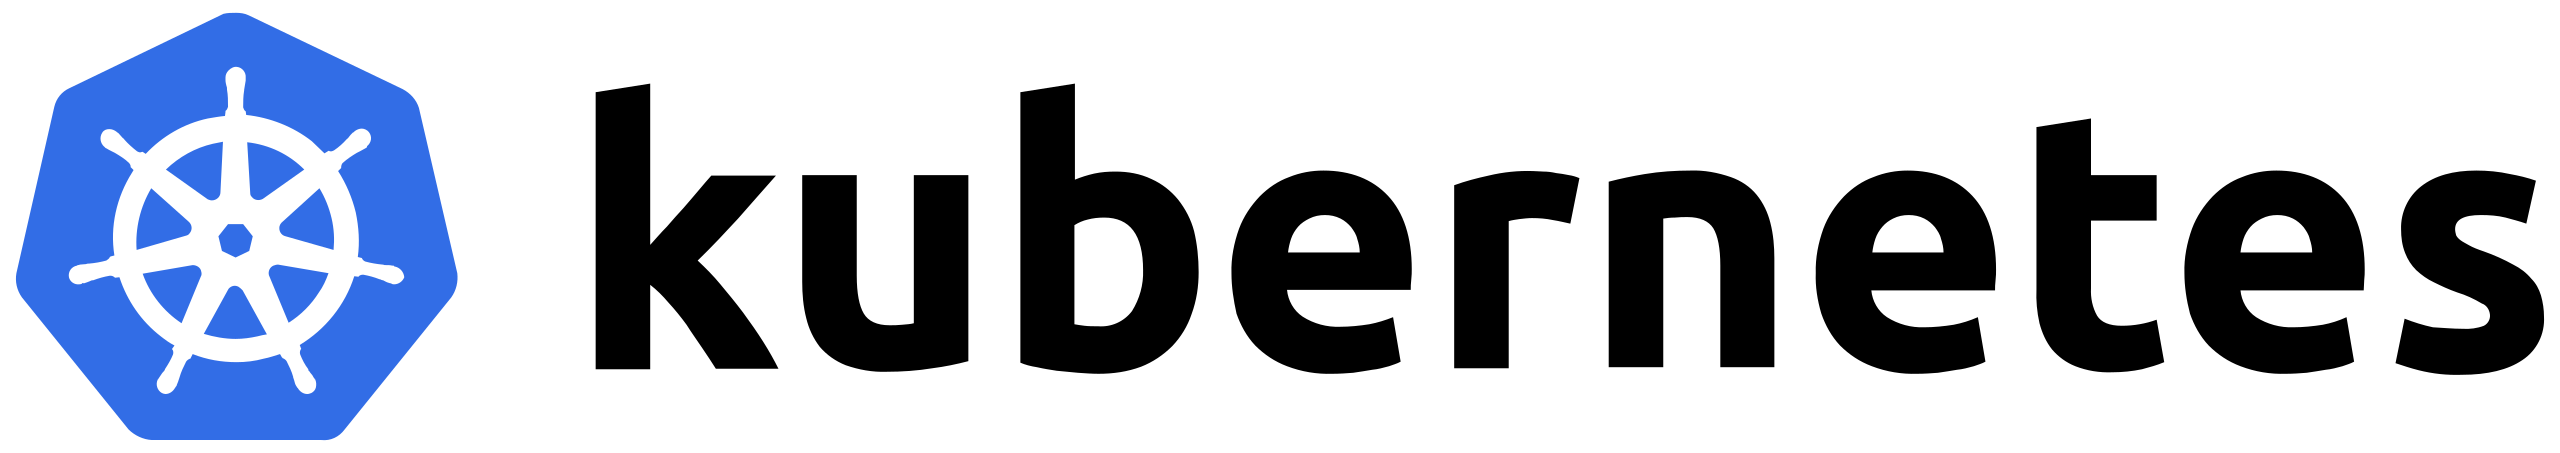 2560px-Kubernetes_logo